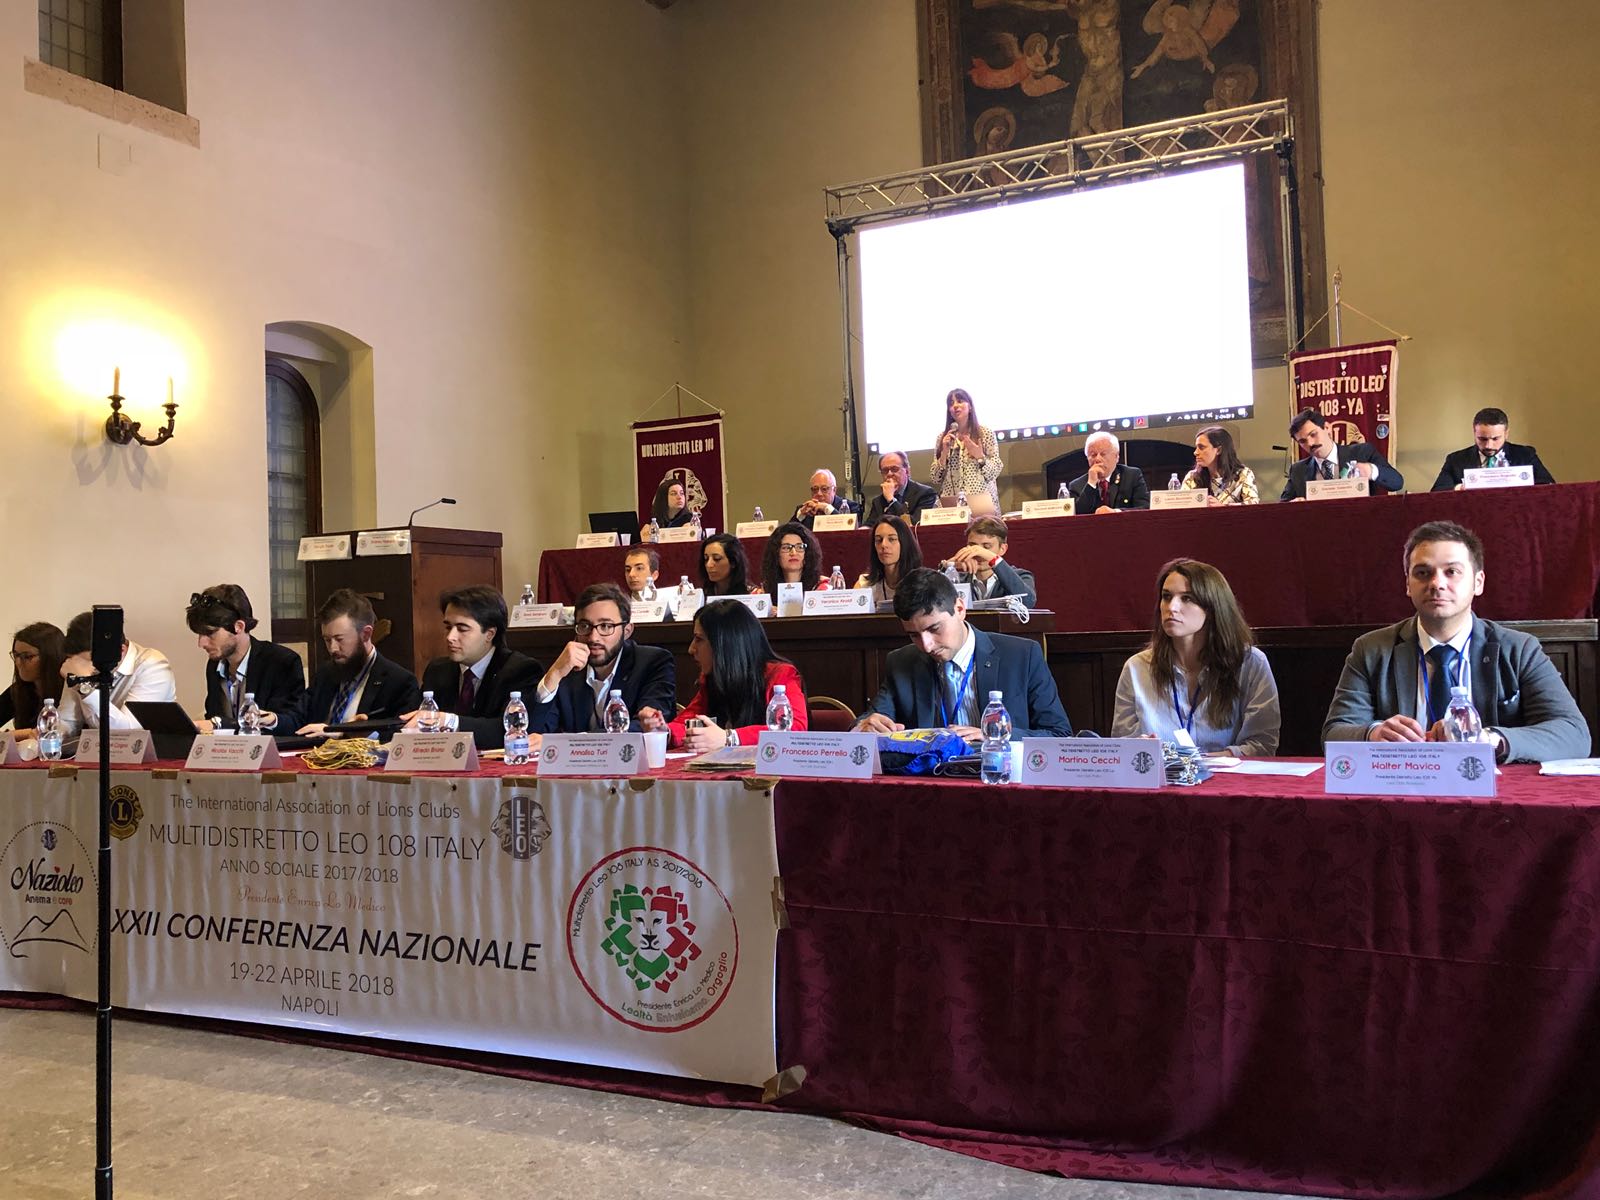 Distretto Leo 108Ya ha ospitato la XXII Conferenza Nazionale Multidistretto Leo 108 ITALY